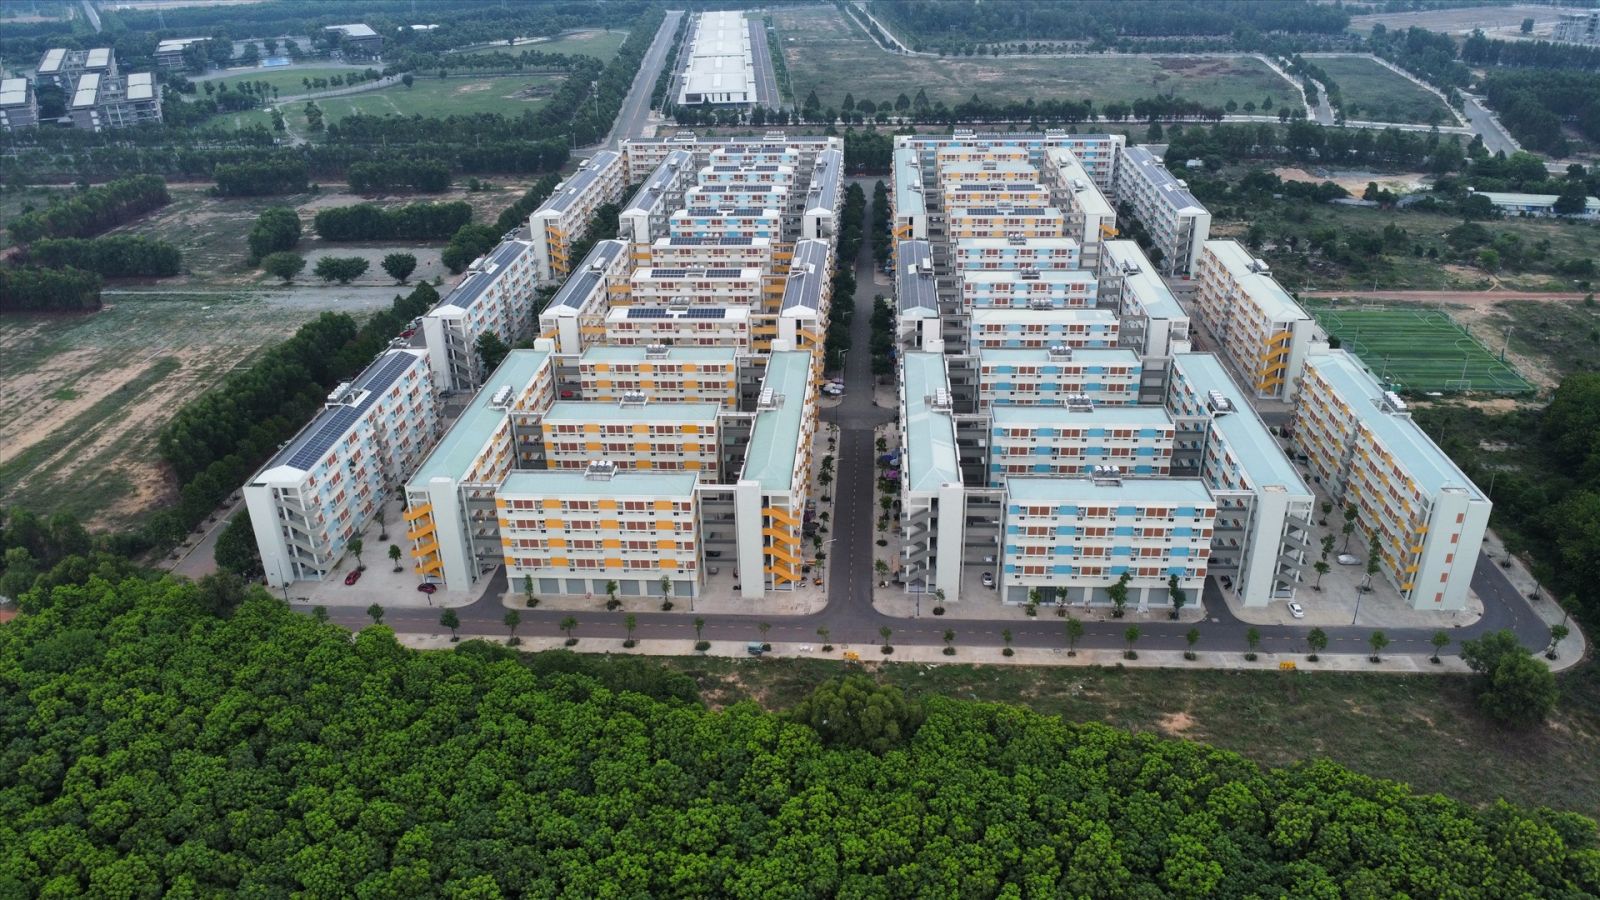 Đây là khu nhà ở xã hội Định Hòa thuộc phường Định Hòa, TP Thủ Dầu Một, tỉnh Bình Dương do Tổng Công ty Becamex IDC thực hiện.